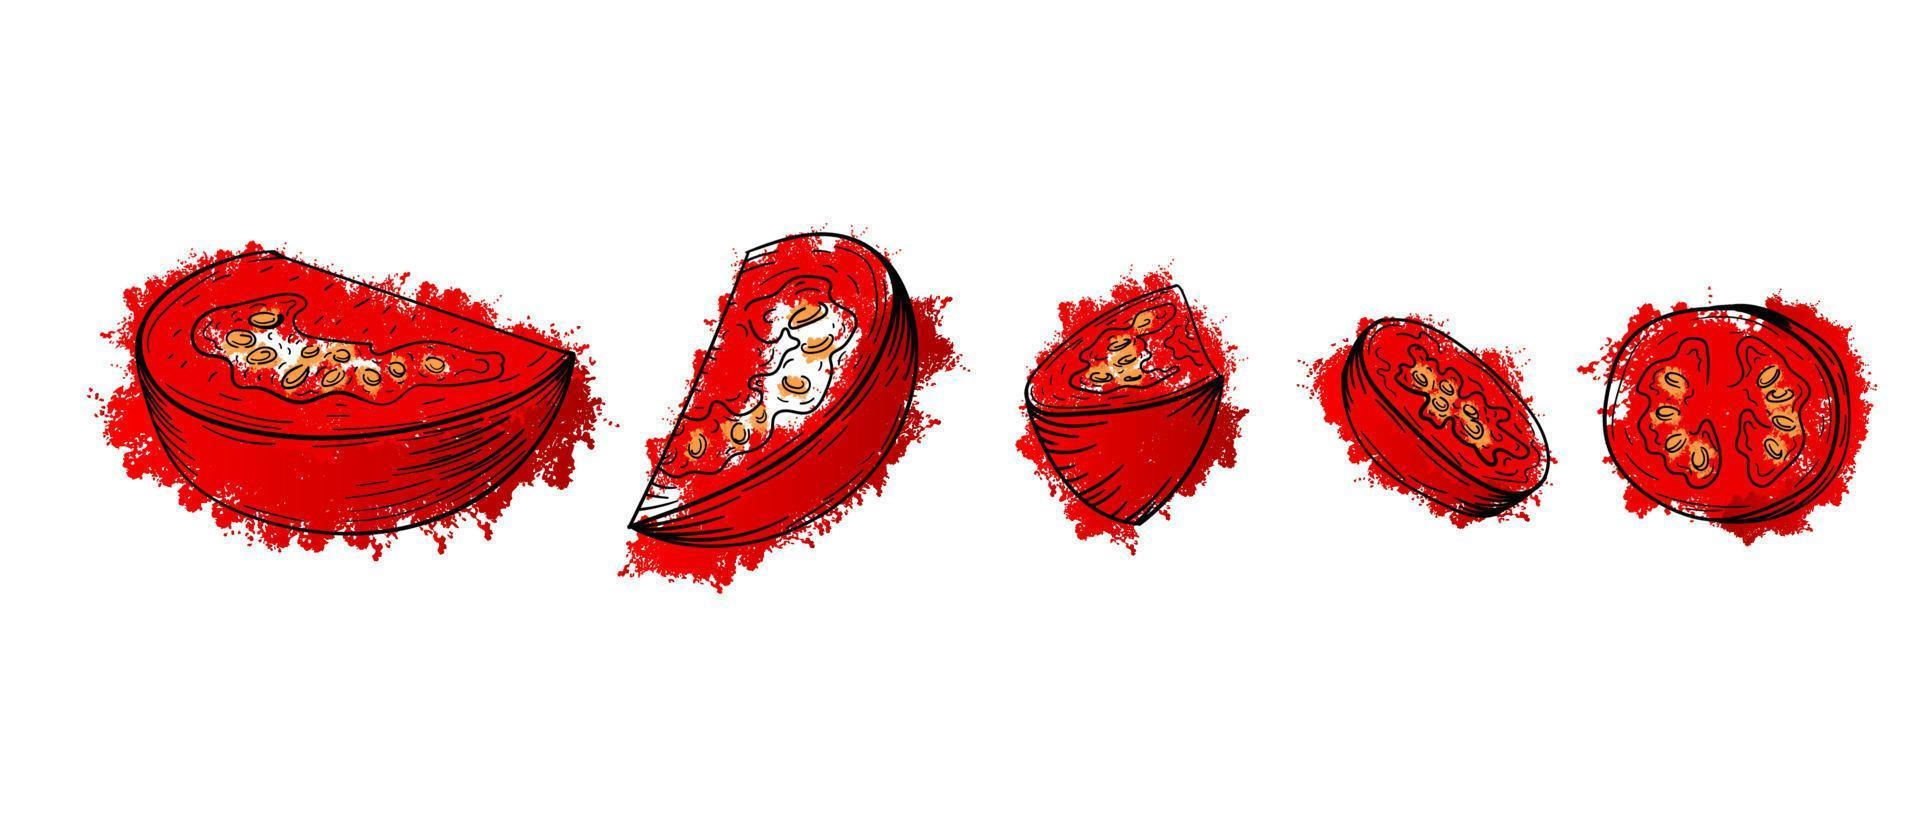 légumes en tranches de tomate. croquis dessinés à la main peinture aquarelle rouge sur fond blanc. pour le menu, l'affiche, la recette de pizza ou de salade. illustration vectorielle graphique de texture grunge vecteur